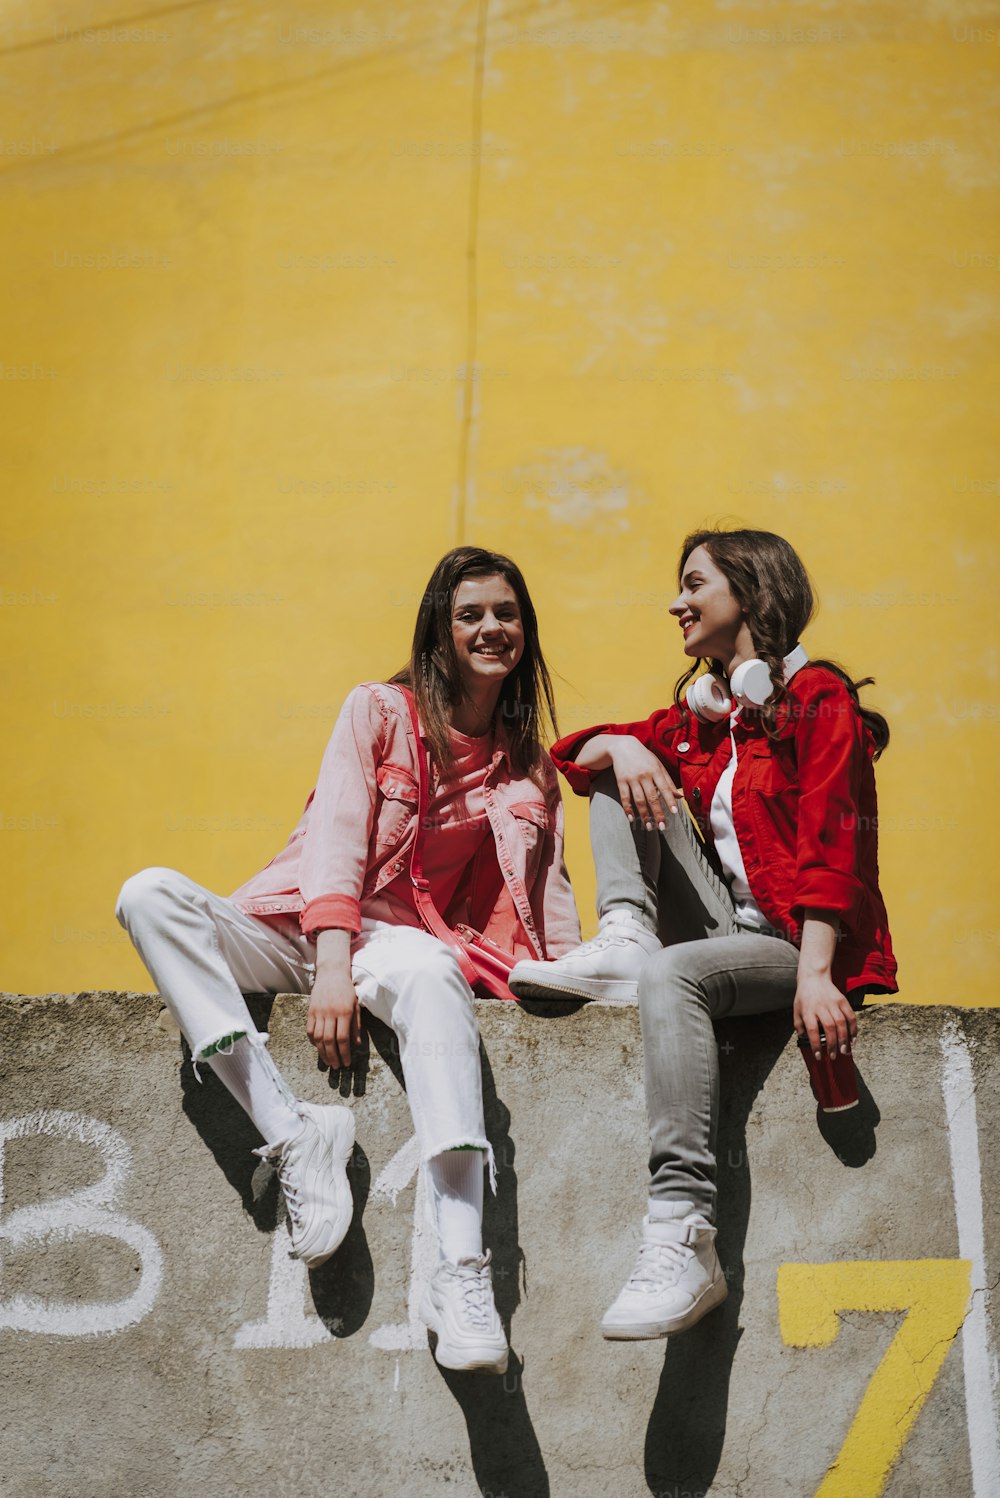 Urbanes Lifestyle-Konzept. Ganzkörperporträt zweier junger, glücklich lächelnder Hipster-Damen, die zusammen auf einer Brüstungswand ruhen